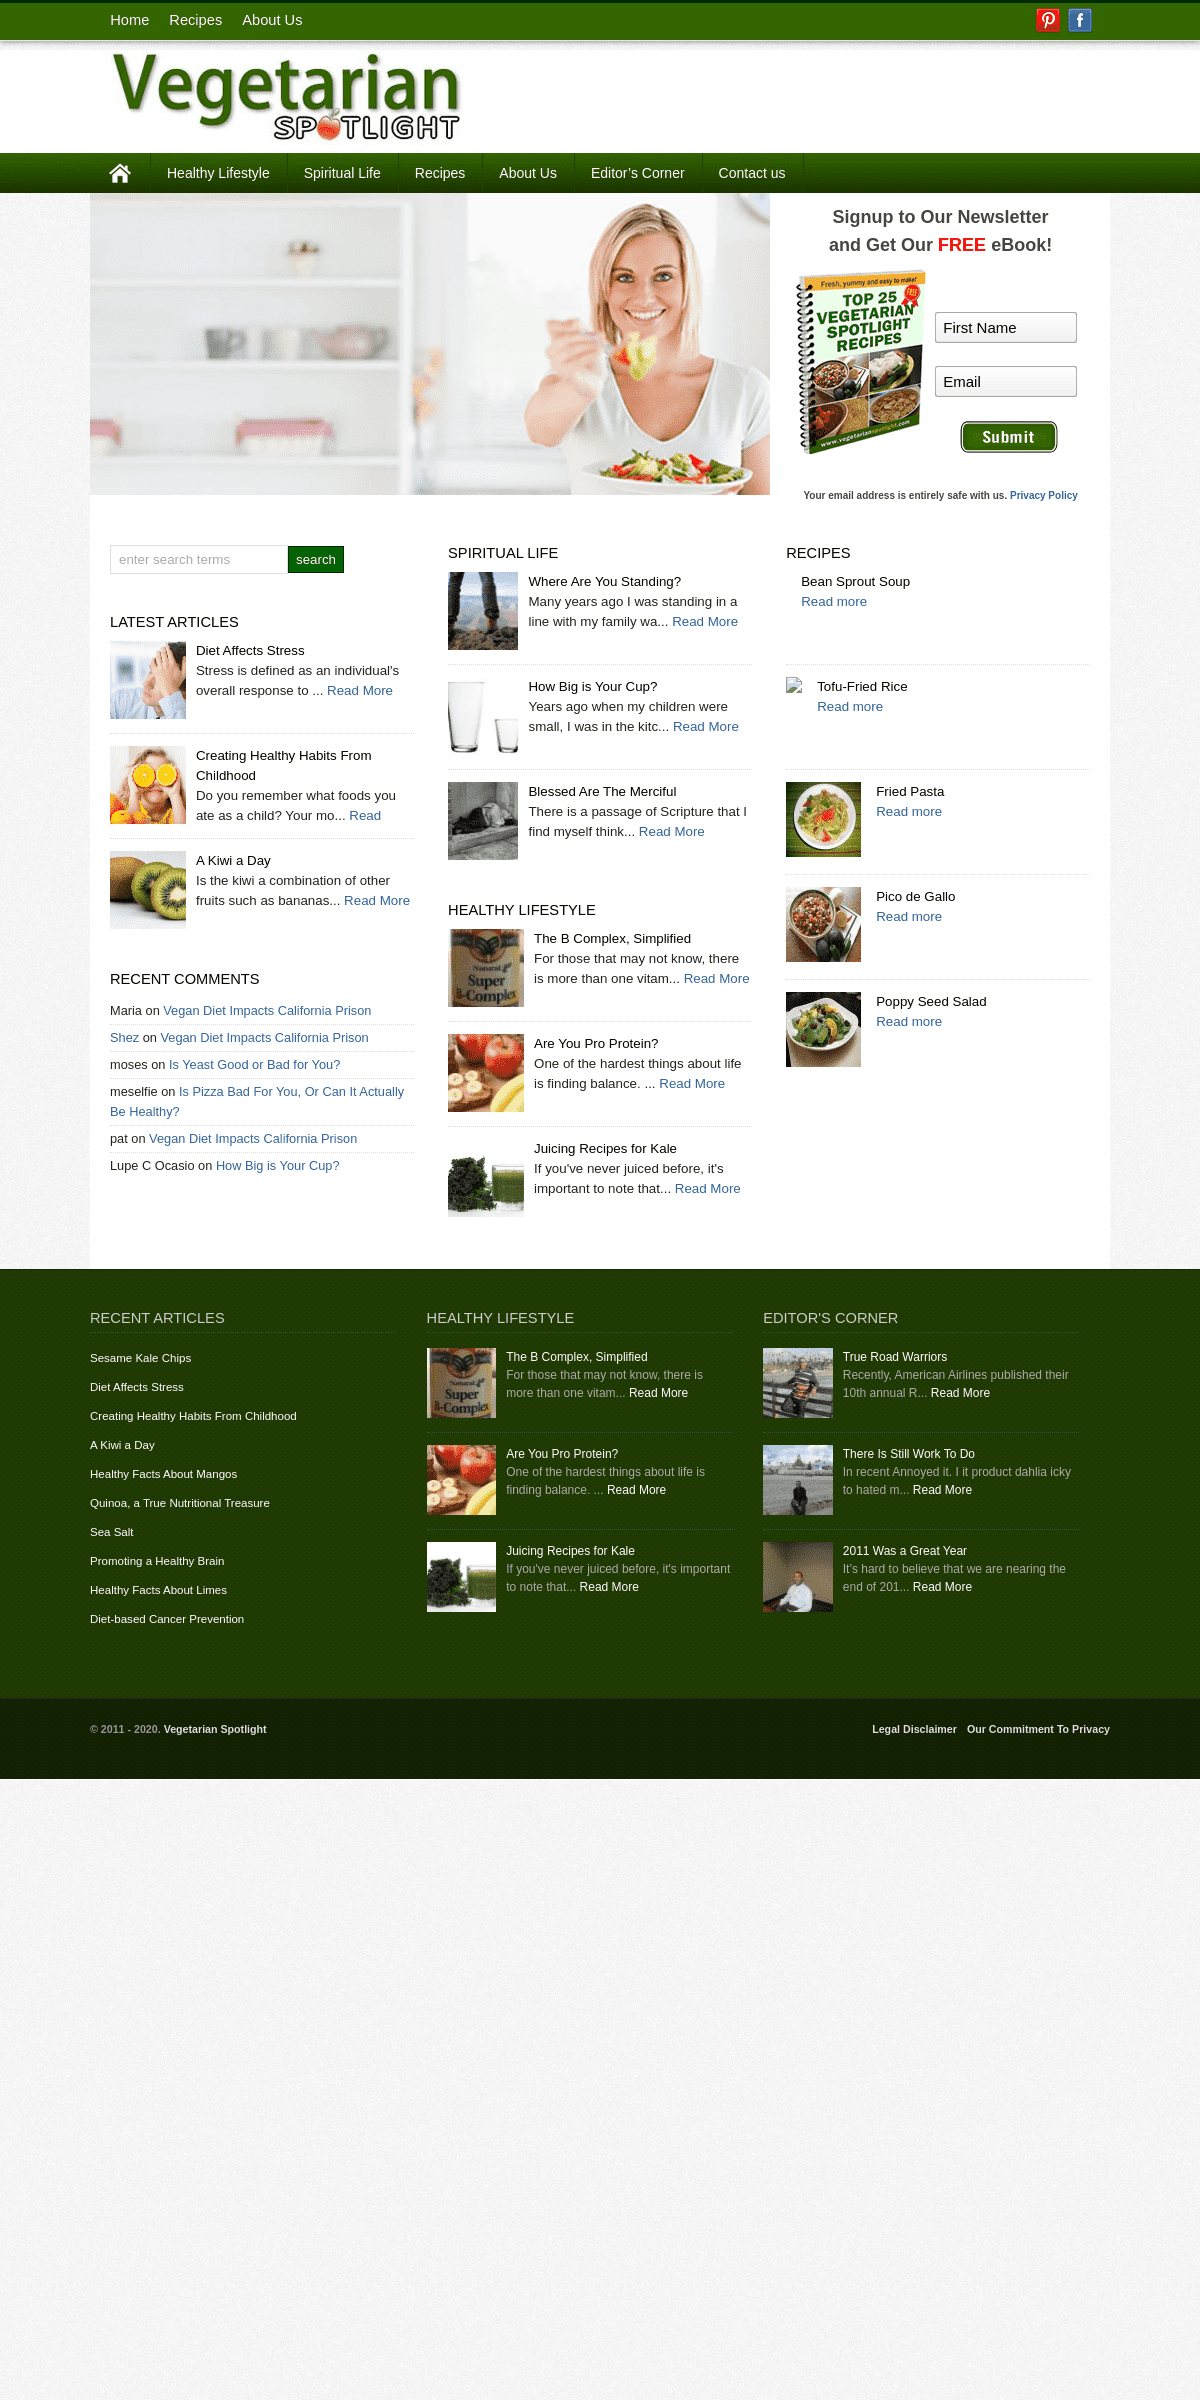 A complete backup of vegetarianspotlight.com